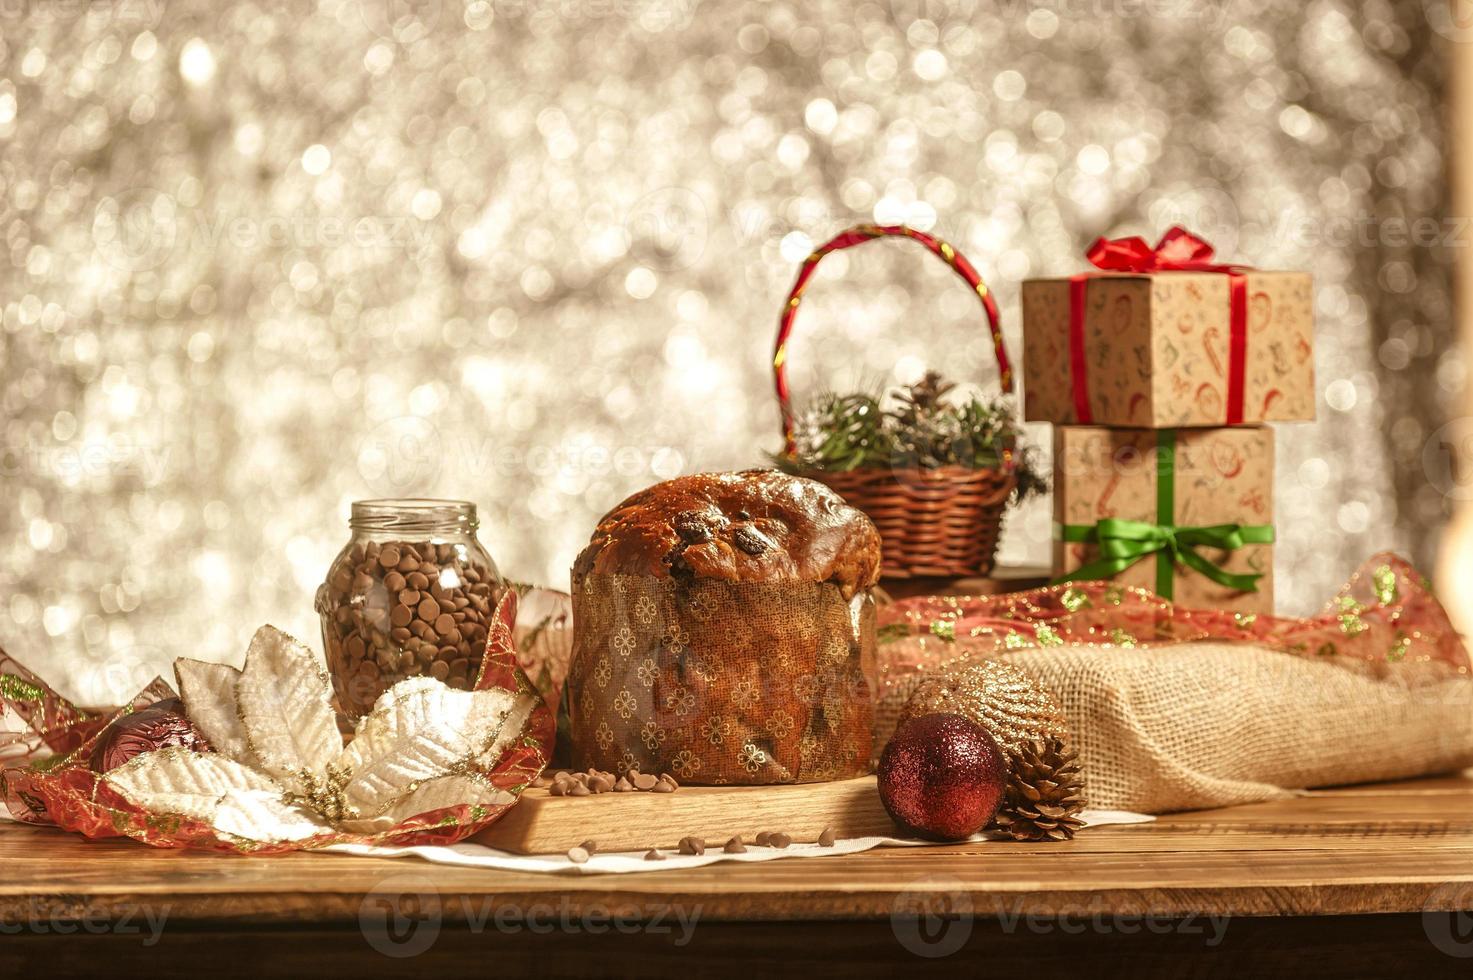 panetone de chocolate na mesa de madeira com enfeites de natal foto